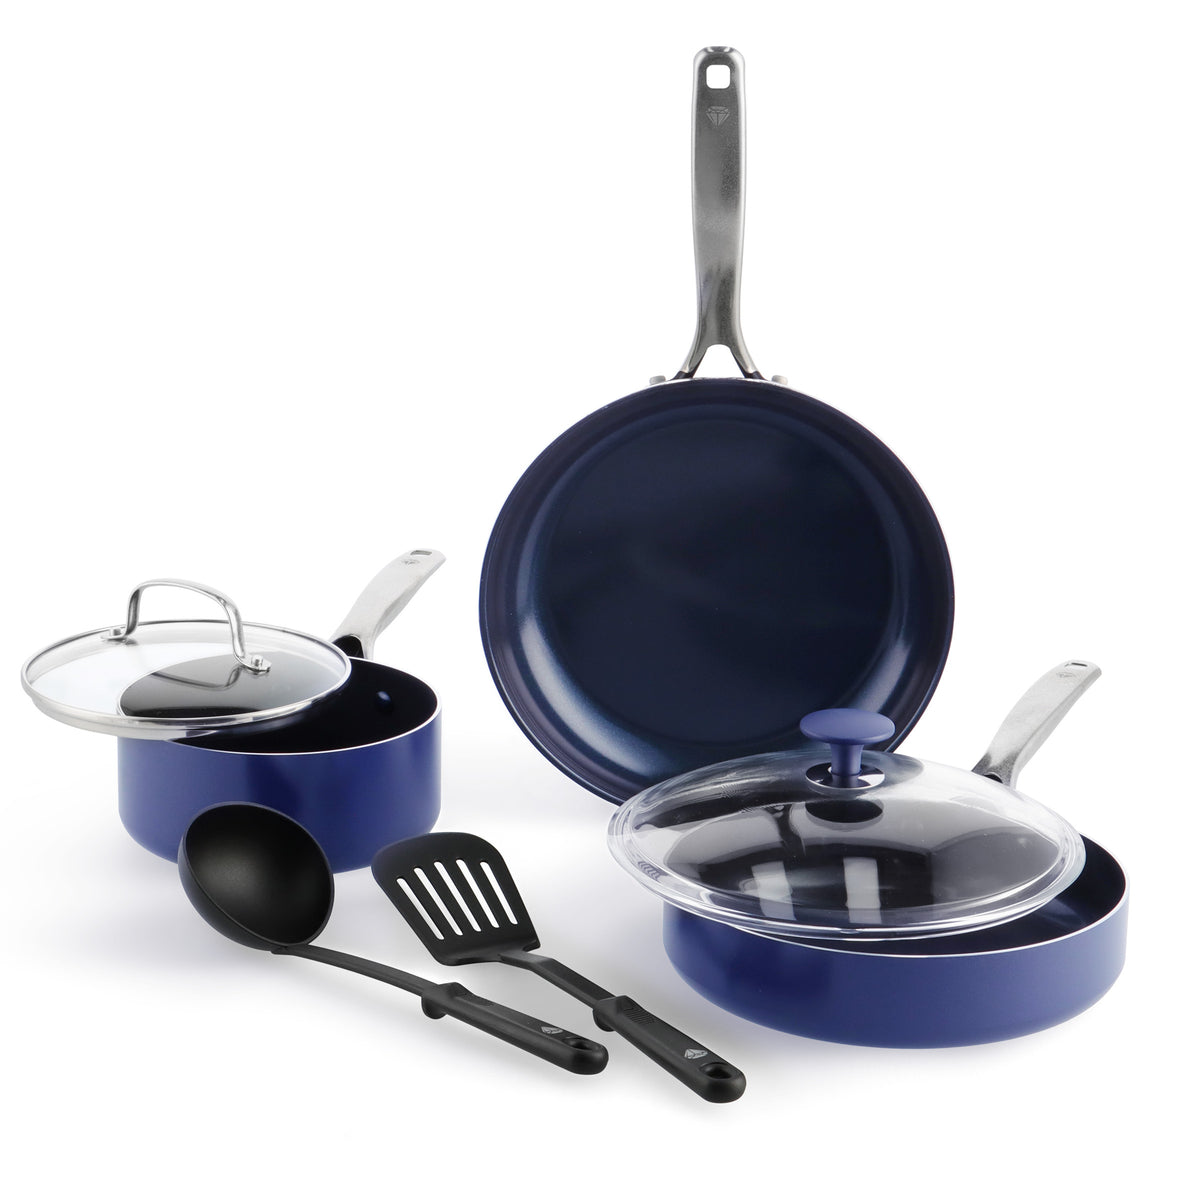 Ceramic Nonstick 7 Pieces Pots and Pans Cookware set, Blue – Appliances